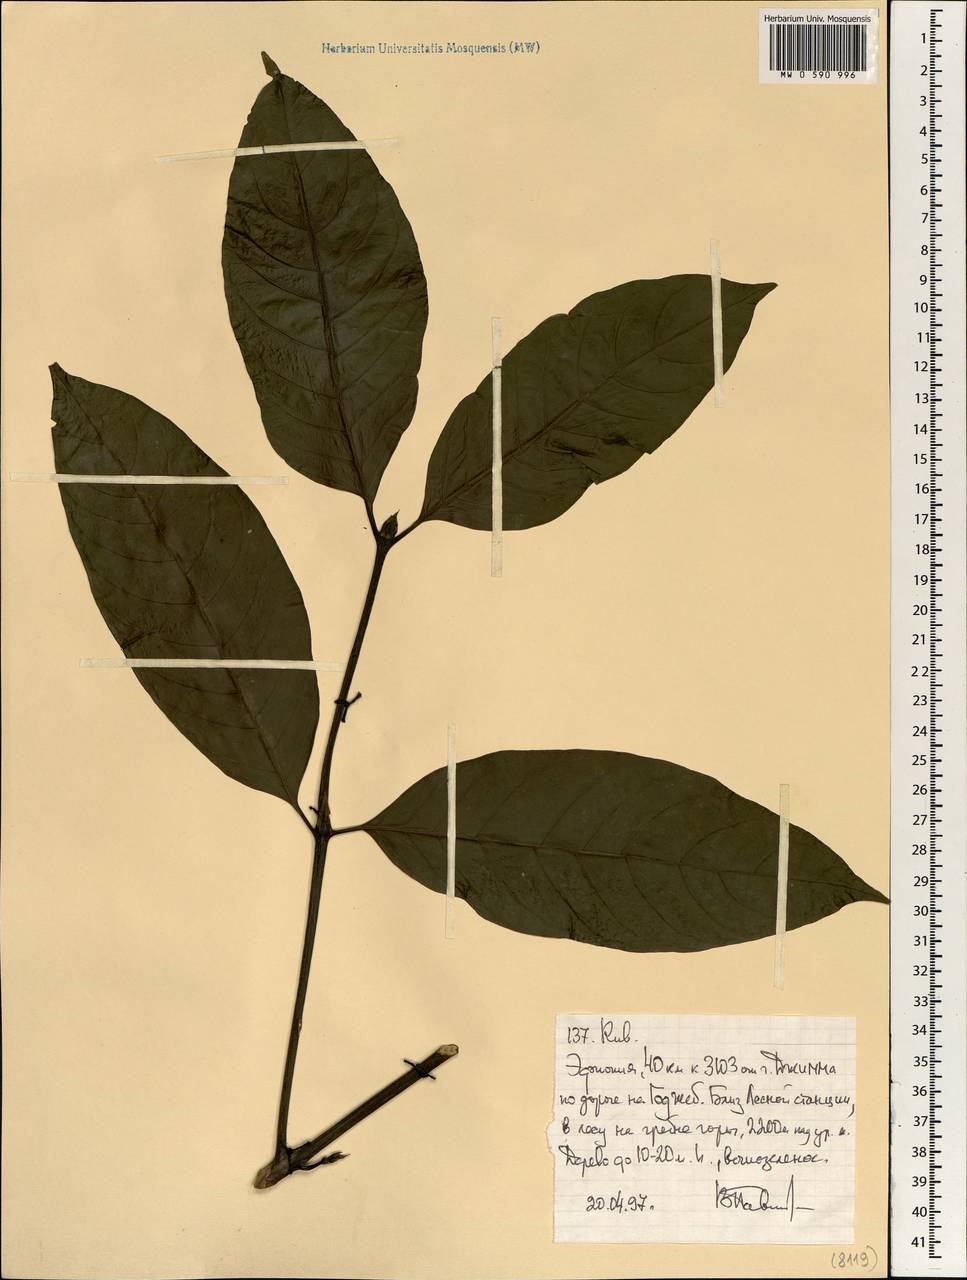 Rubiaceae, Африка (AFR) (Эфиопия)